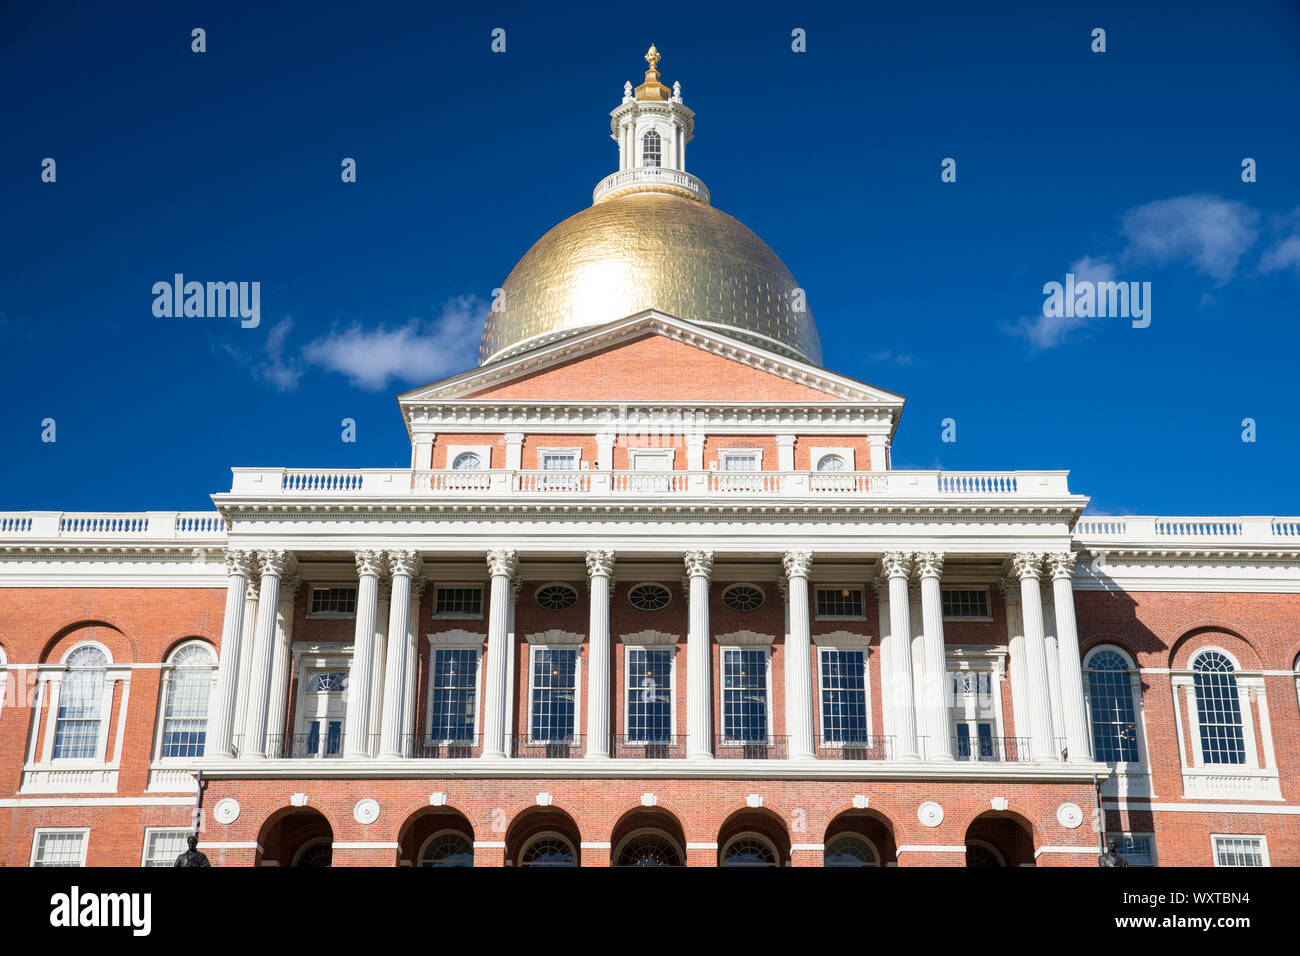 Massachusetts State House et le siège du gouvernement, avec dôme doré et de colonnes dans la ville de Boston, USA Banque D'Images